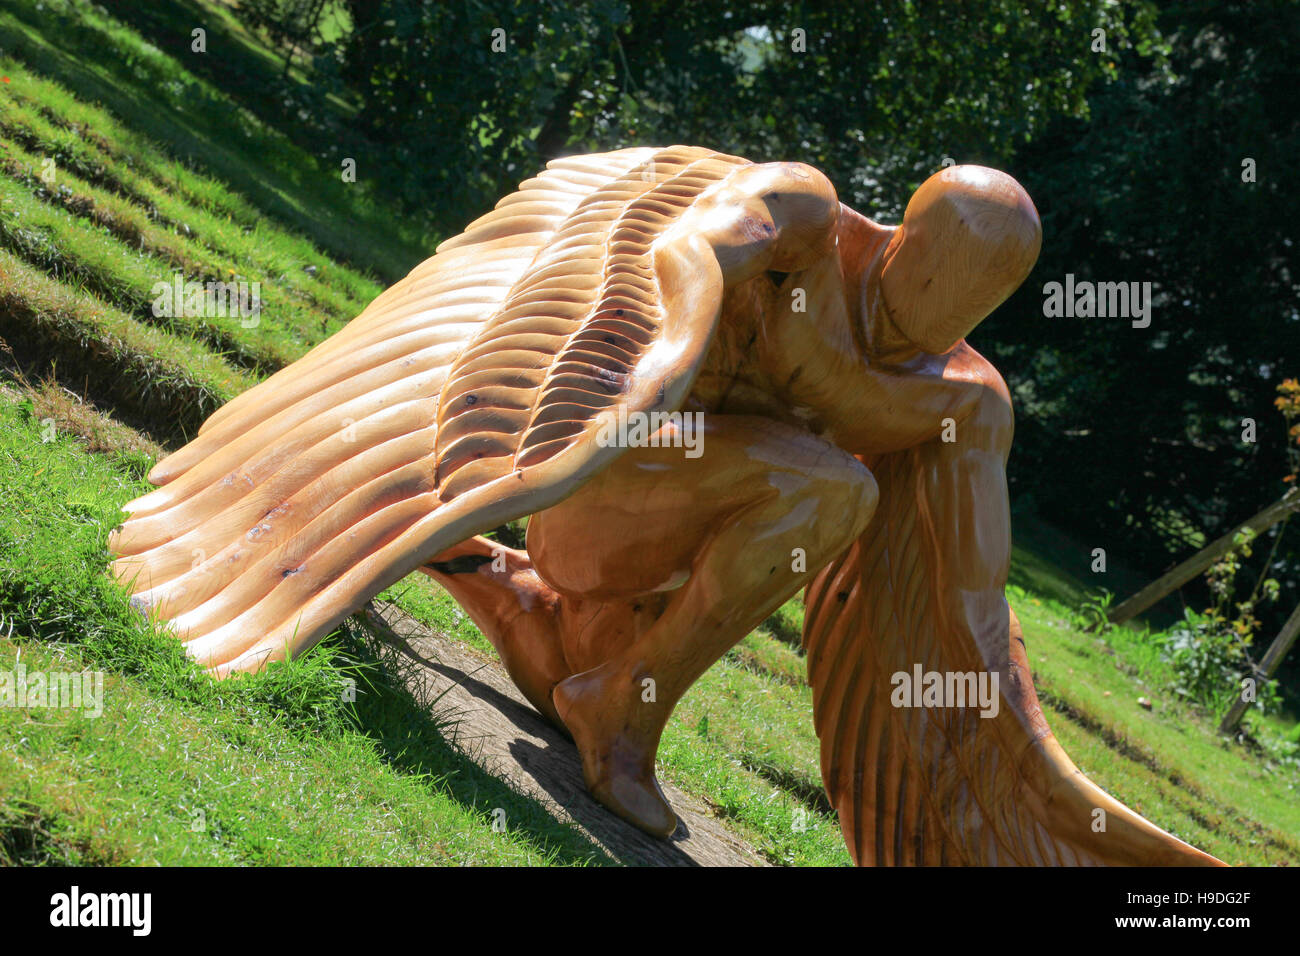 Doddington Hall, sculptures, Lincoln, arts, mythologie grecque Icarus, fils de Daedalus, sculpture en bois, sculpture, exposition, homme, vol, ailes, figure Banque D'Images